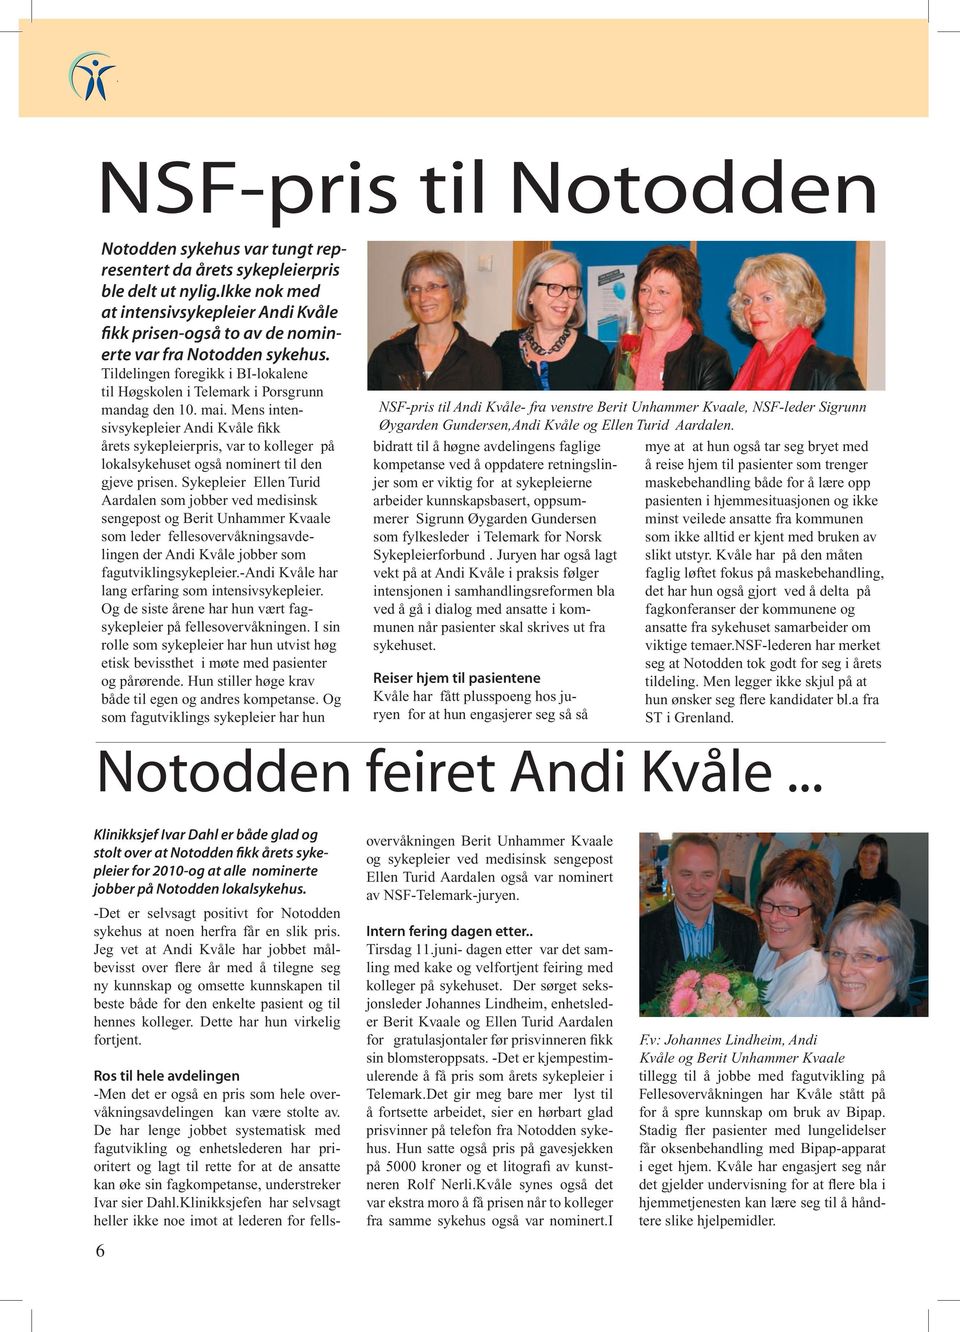 Mens intensivsykepleier Andi Kvåle fikk årets sykepleierpris, var to kolleger på lokalsykehuset også nominert til den gjeve prisen.